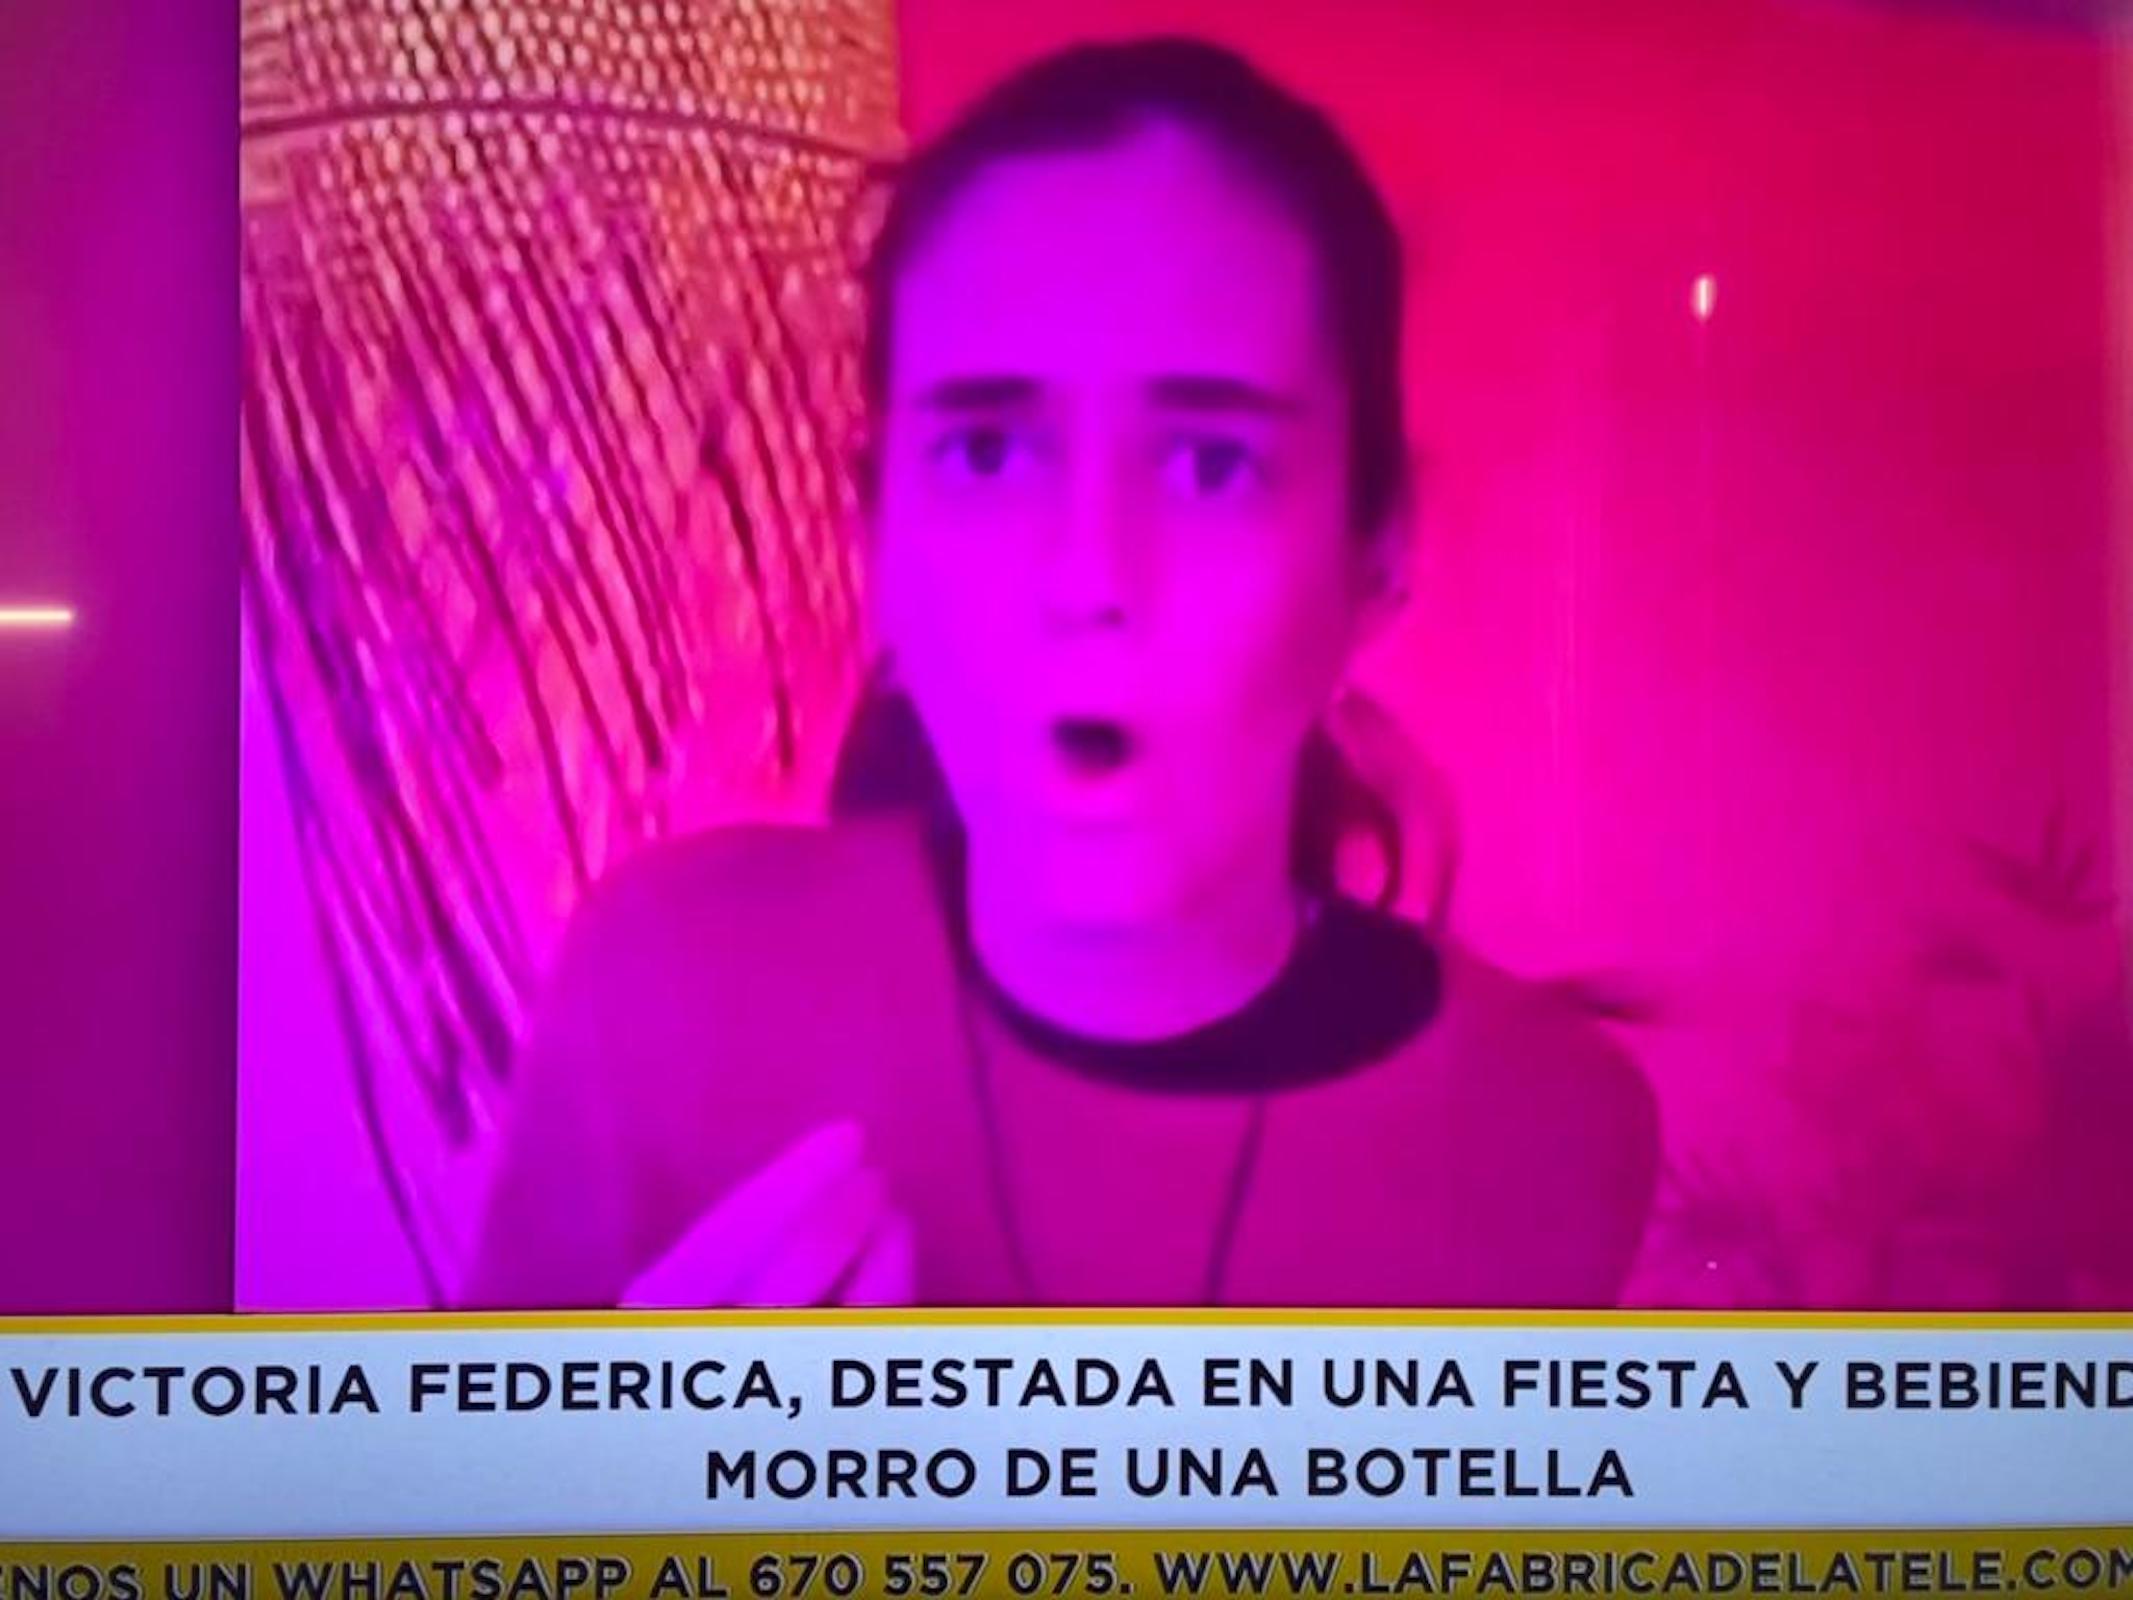 Victoria Frederica cara de festa Telecinco